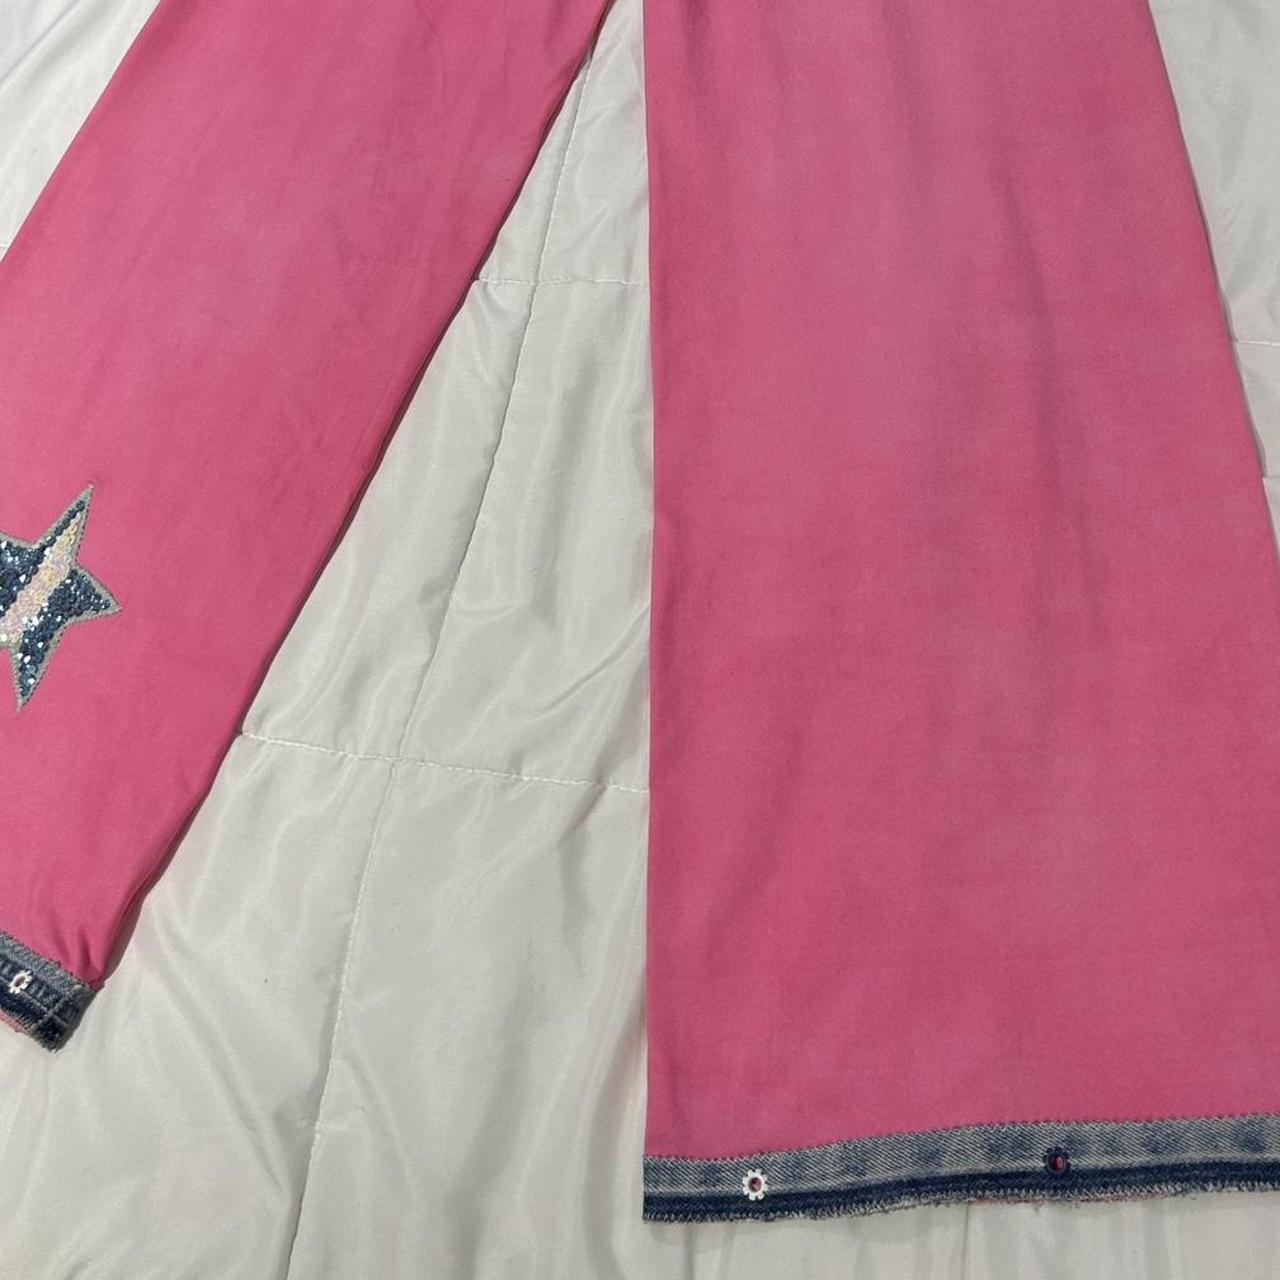 Vintage 2000s hot pink yoga pants w/ denim details